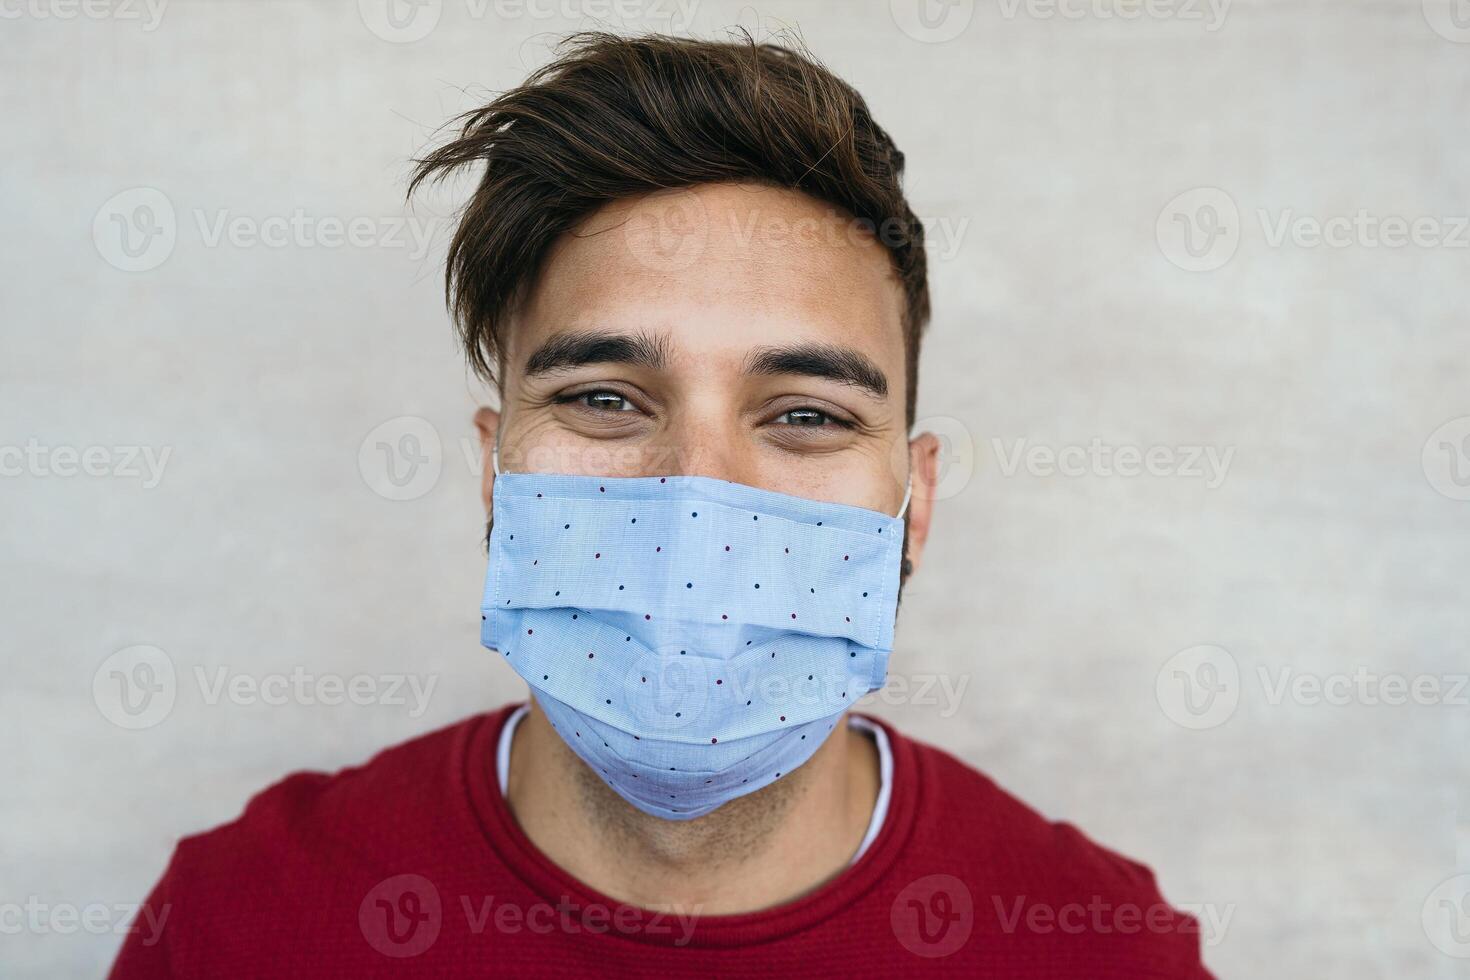 jong Mens vervelend gezicht masker portret - Latijns jongen gebruik makend van beschermend gezichtsmasker voor voorkomen verspreiding van corona virus - Gezondheid zorg en jeugd millennial mensen concept foto